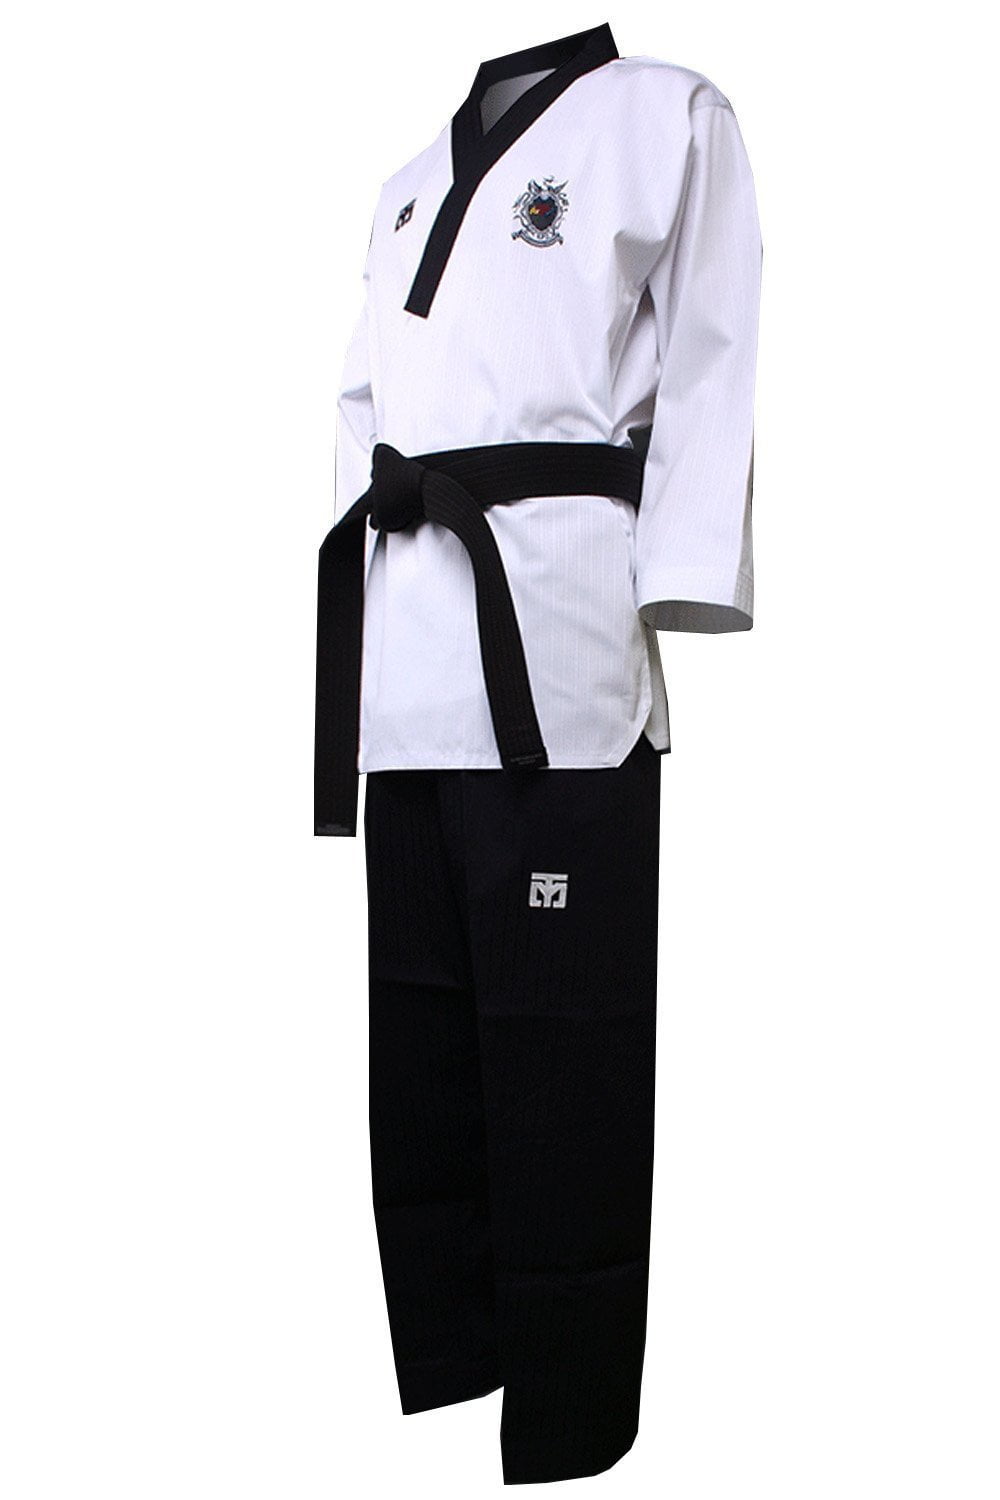 adidas taekwondo gear